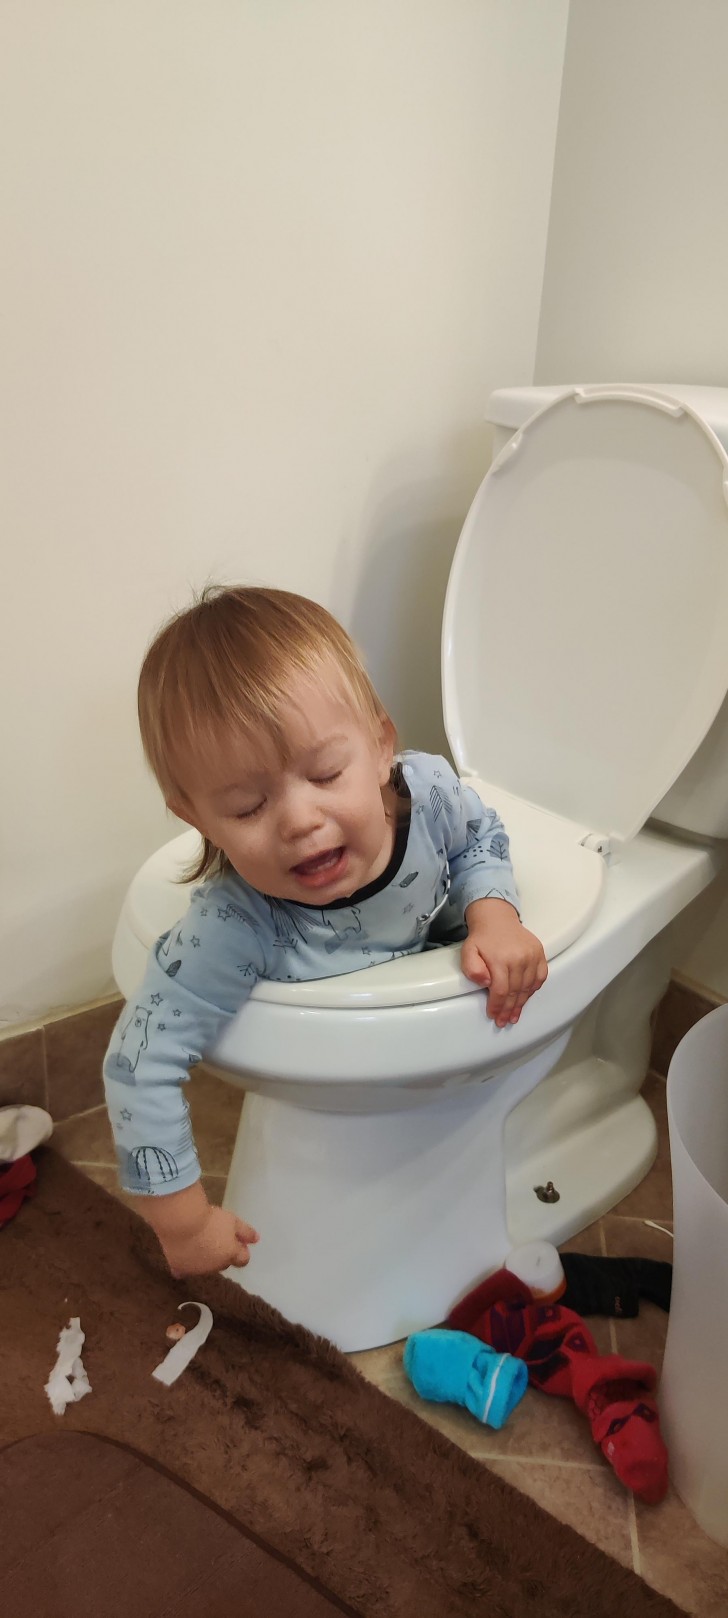 Mi hijo apenas se ha dado cuenta de haber hecho lo incorrecto...¡en el baño!